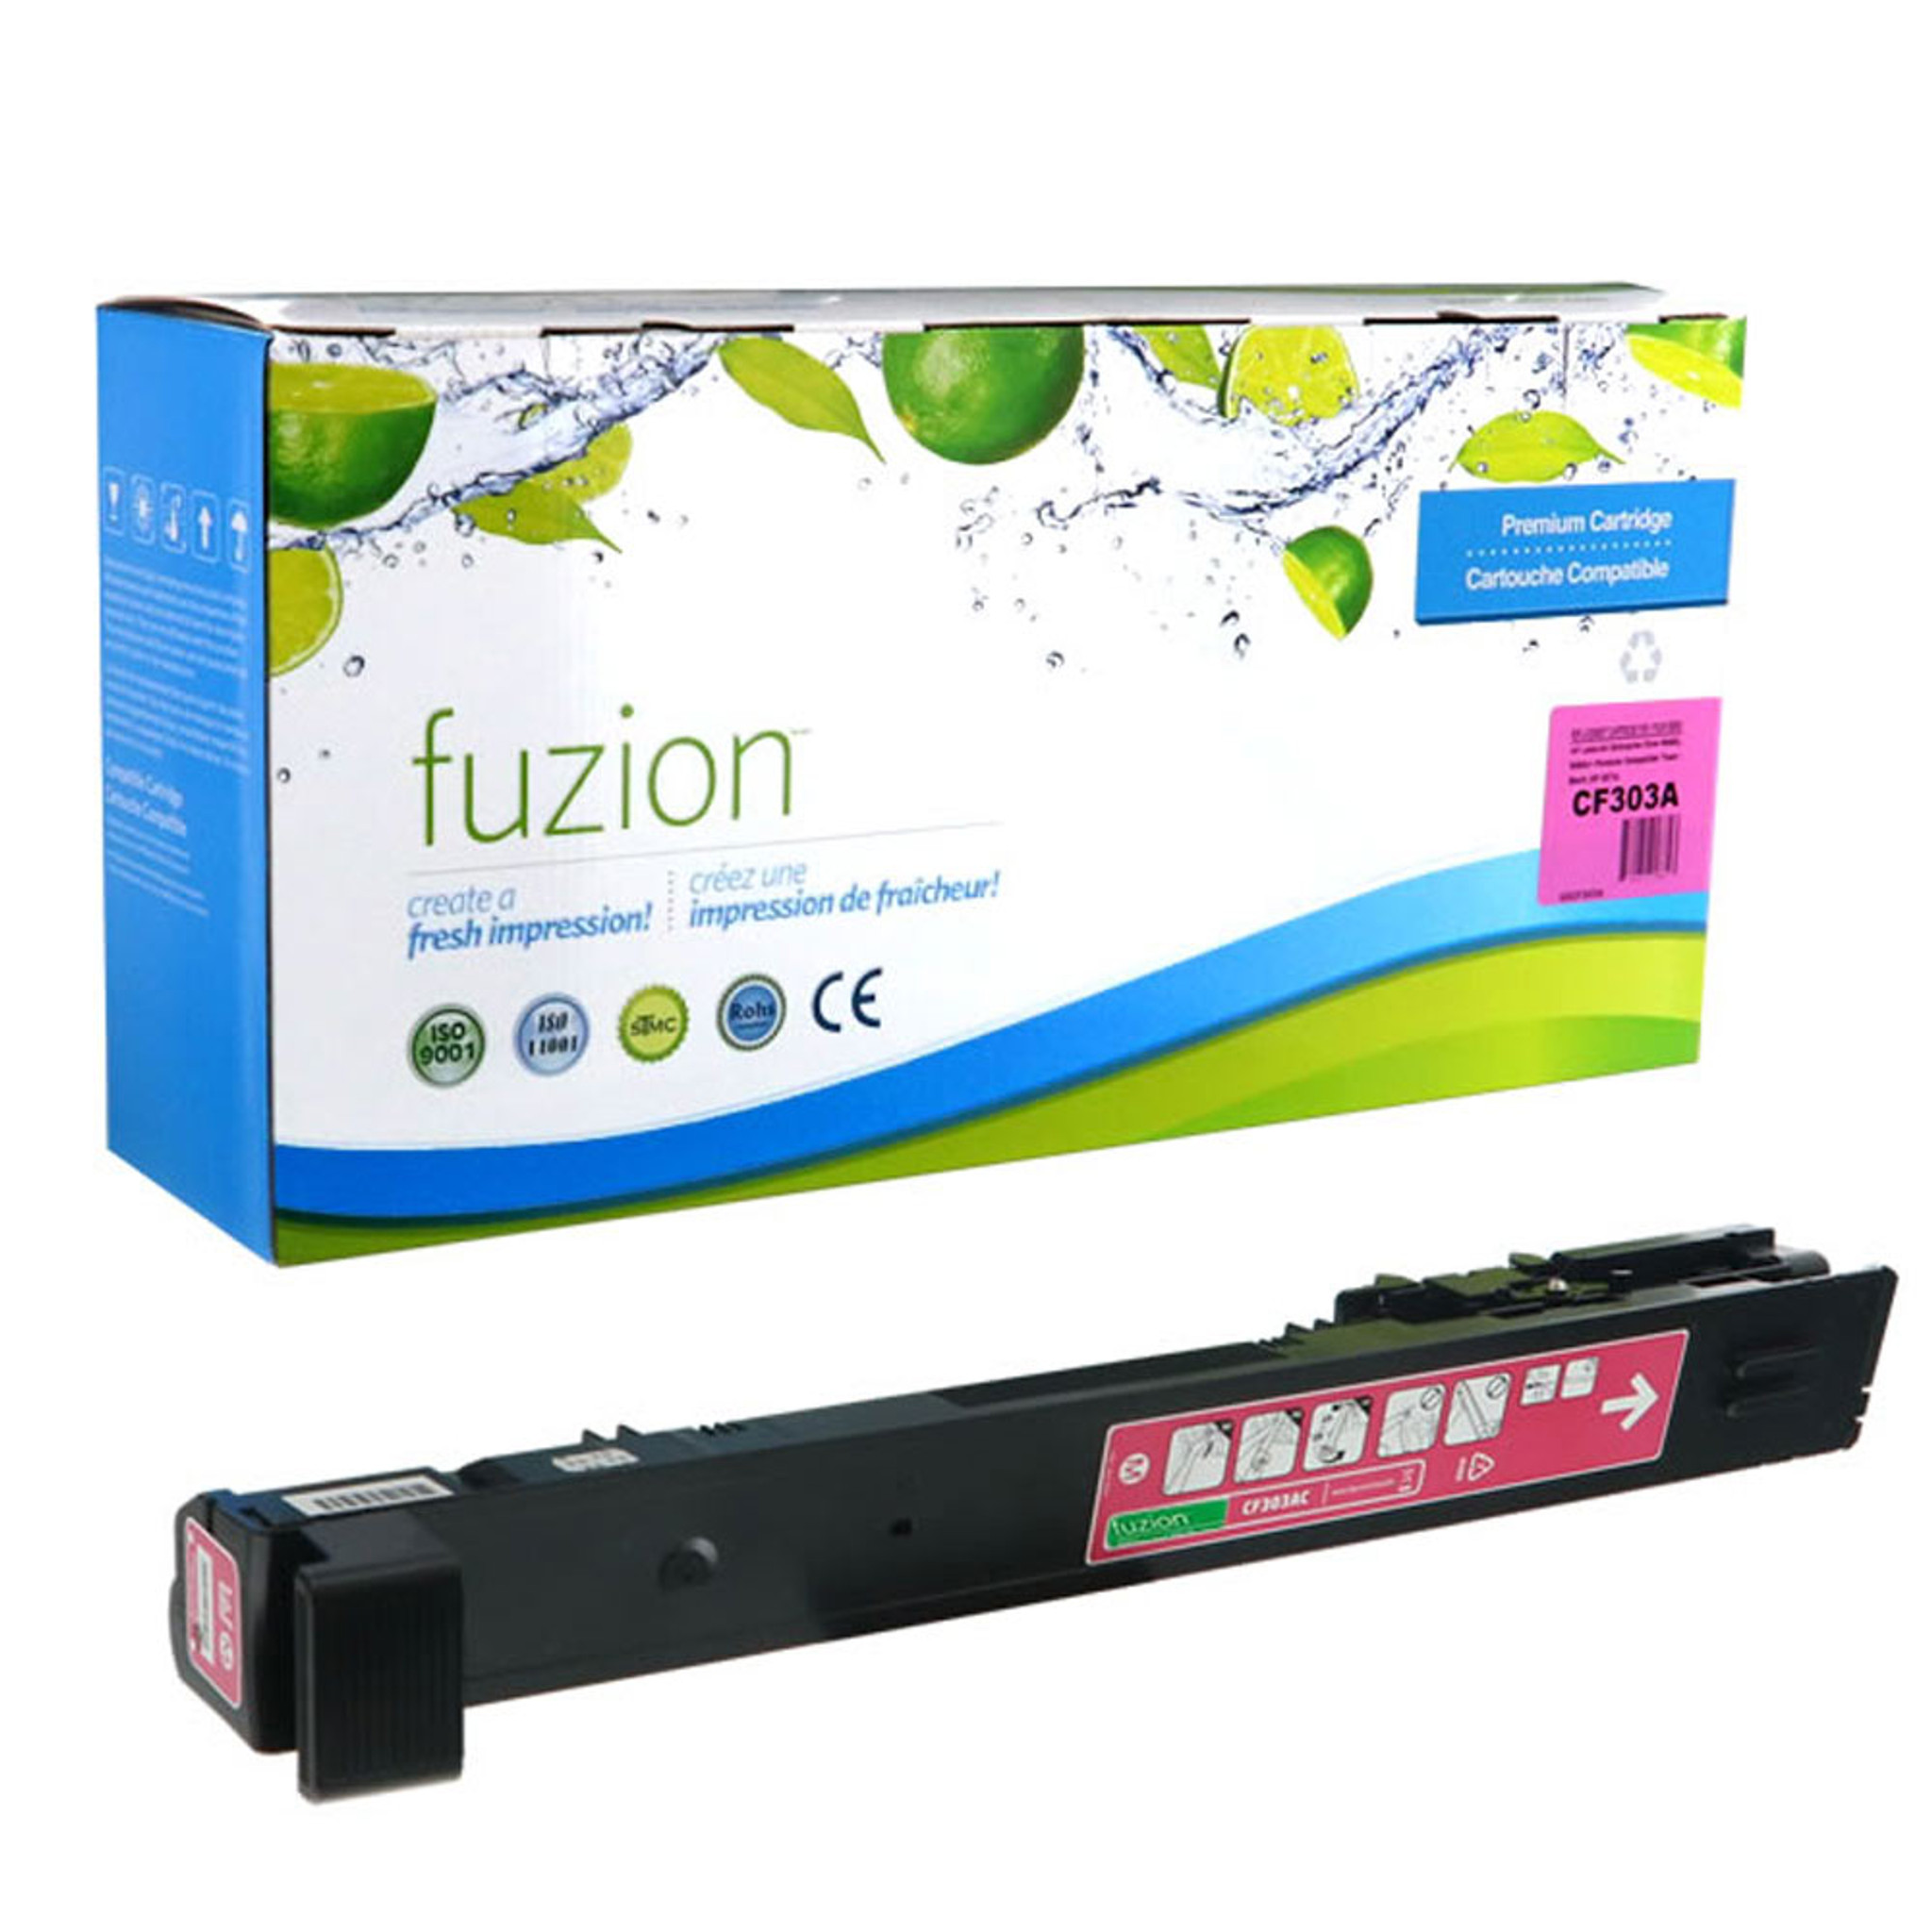 Fuzion HP 827A (CF303A) Toner Magenta Remanufactured CartridgeStore